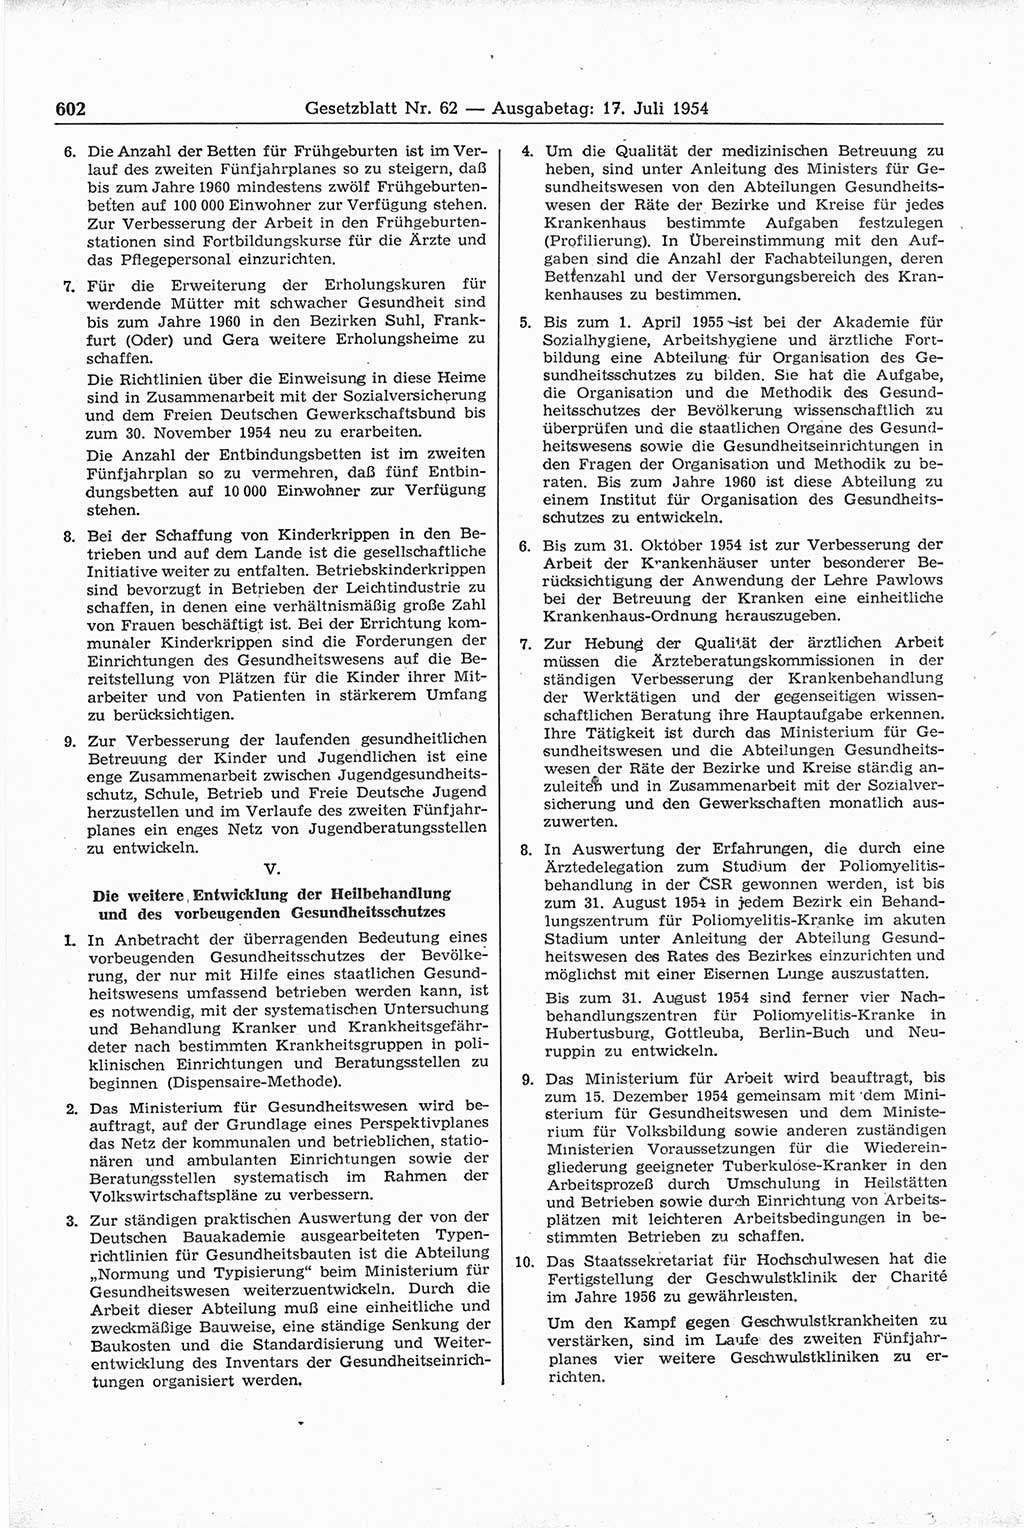 Gesetzblatt (GBl.) der Deutschen Demokratischen Republik (DDR) 1954, Seite 602 (GBl. DDR 1954, S. 602)